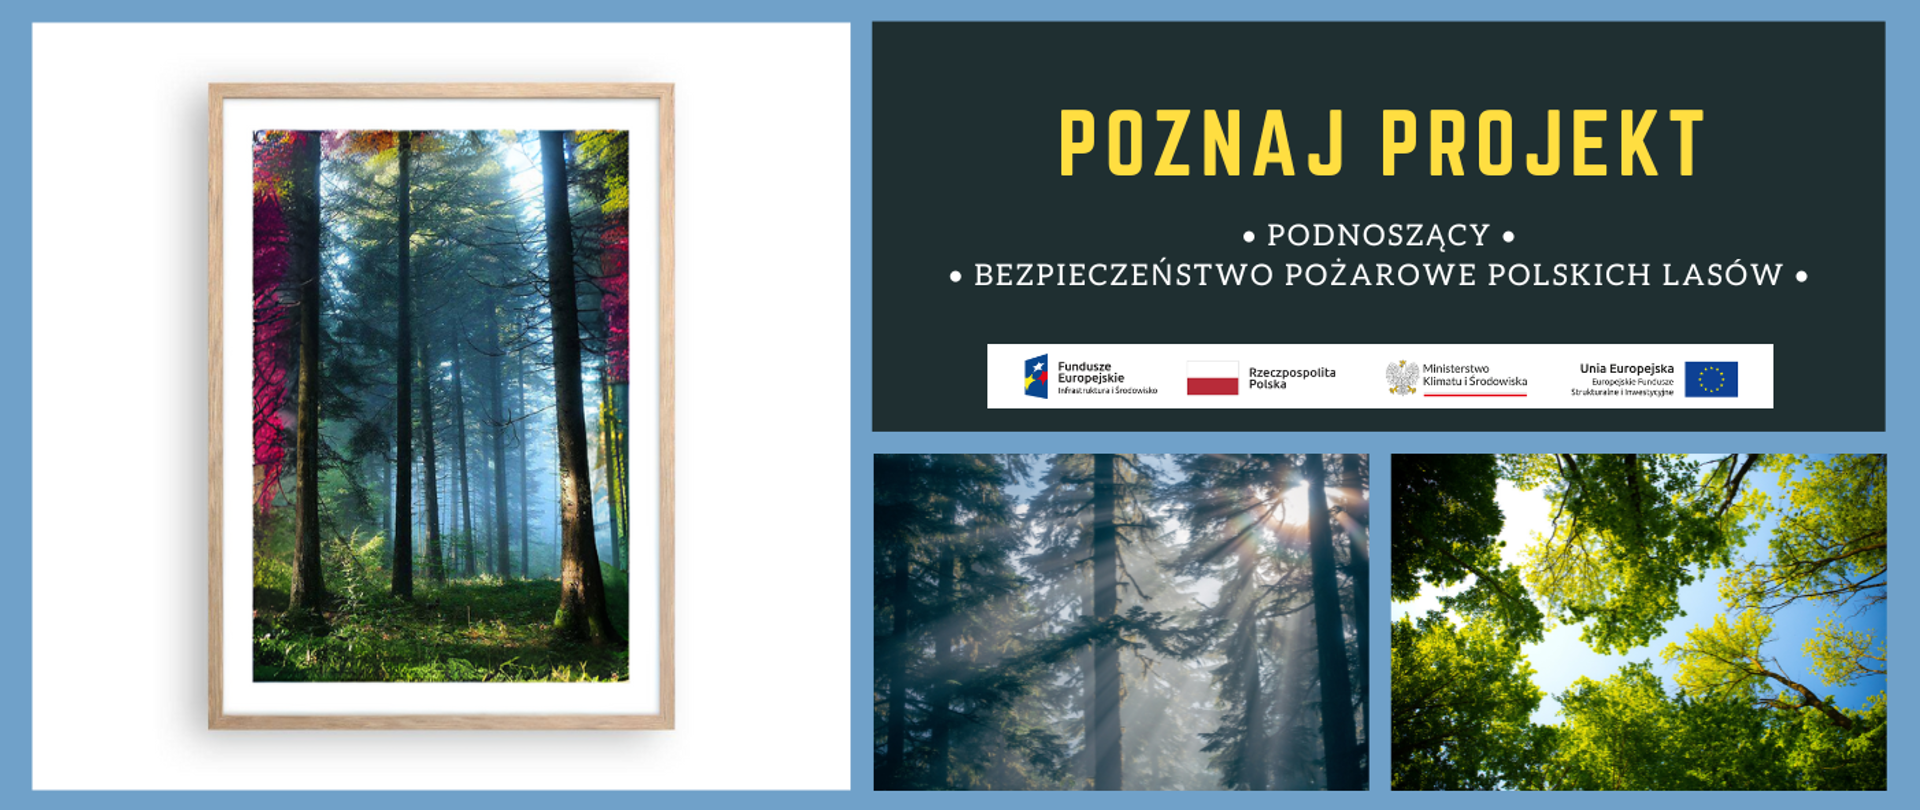 na głównym planie 3 zdjęcia zadrzewień leśnych ukazane przy słonecznej pogodzie. W prawym górnym rogu napisy. Poznaj projekt podnoszący bezpieczeństwo pożarowe polskich lasów. 